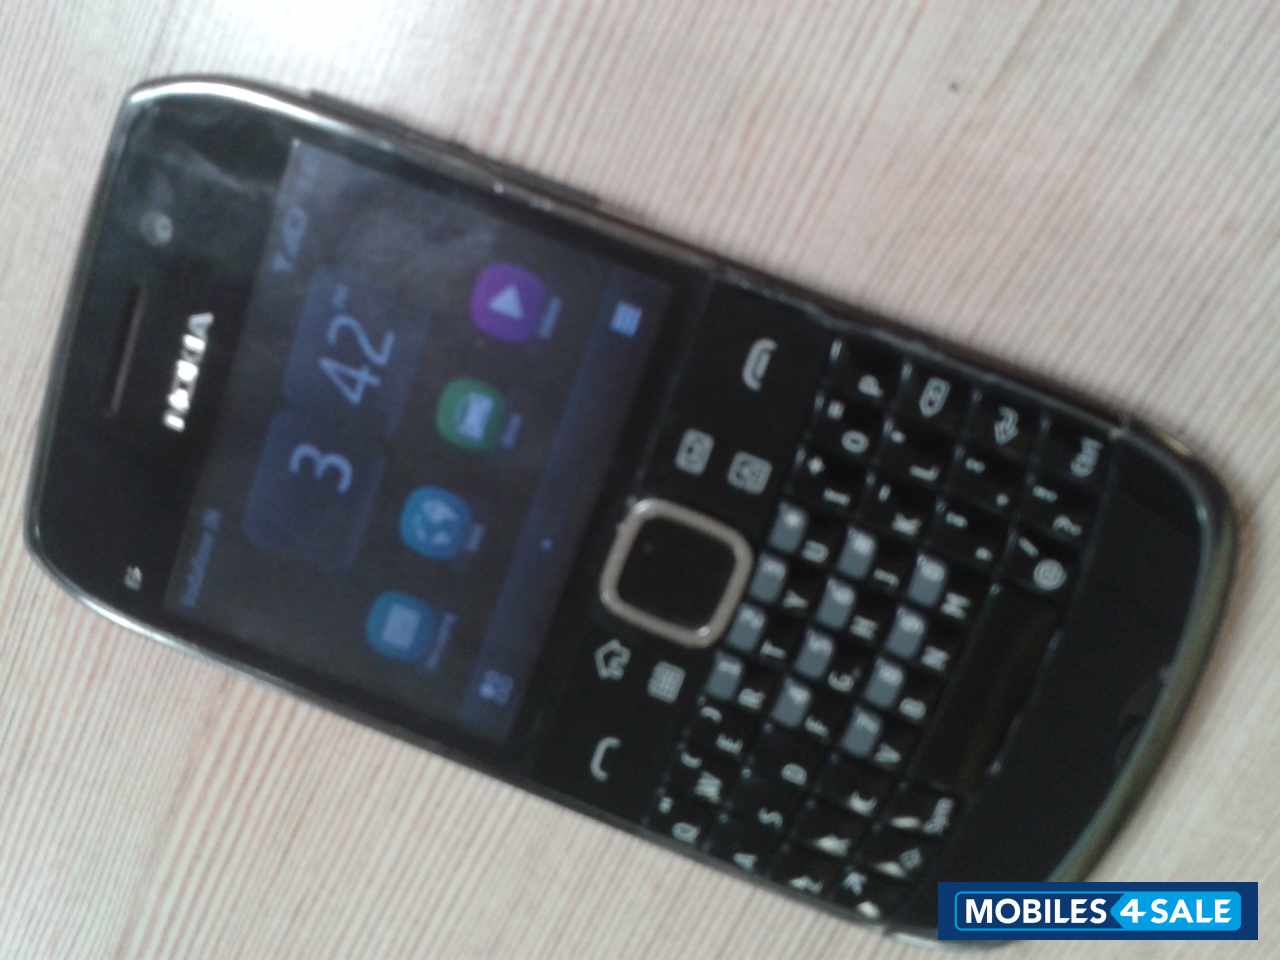 Black Nokia E6-00